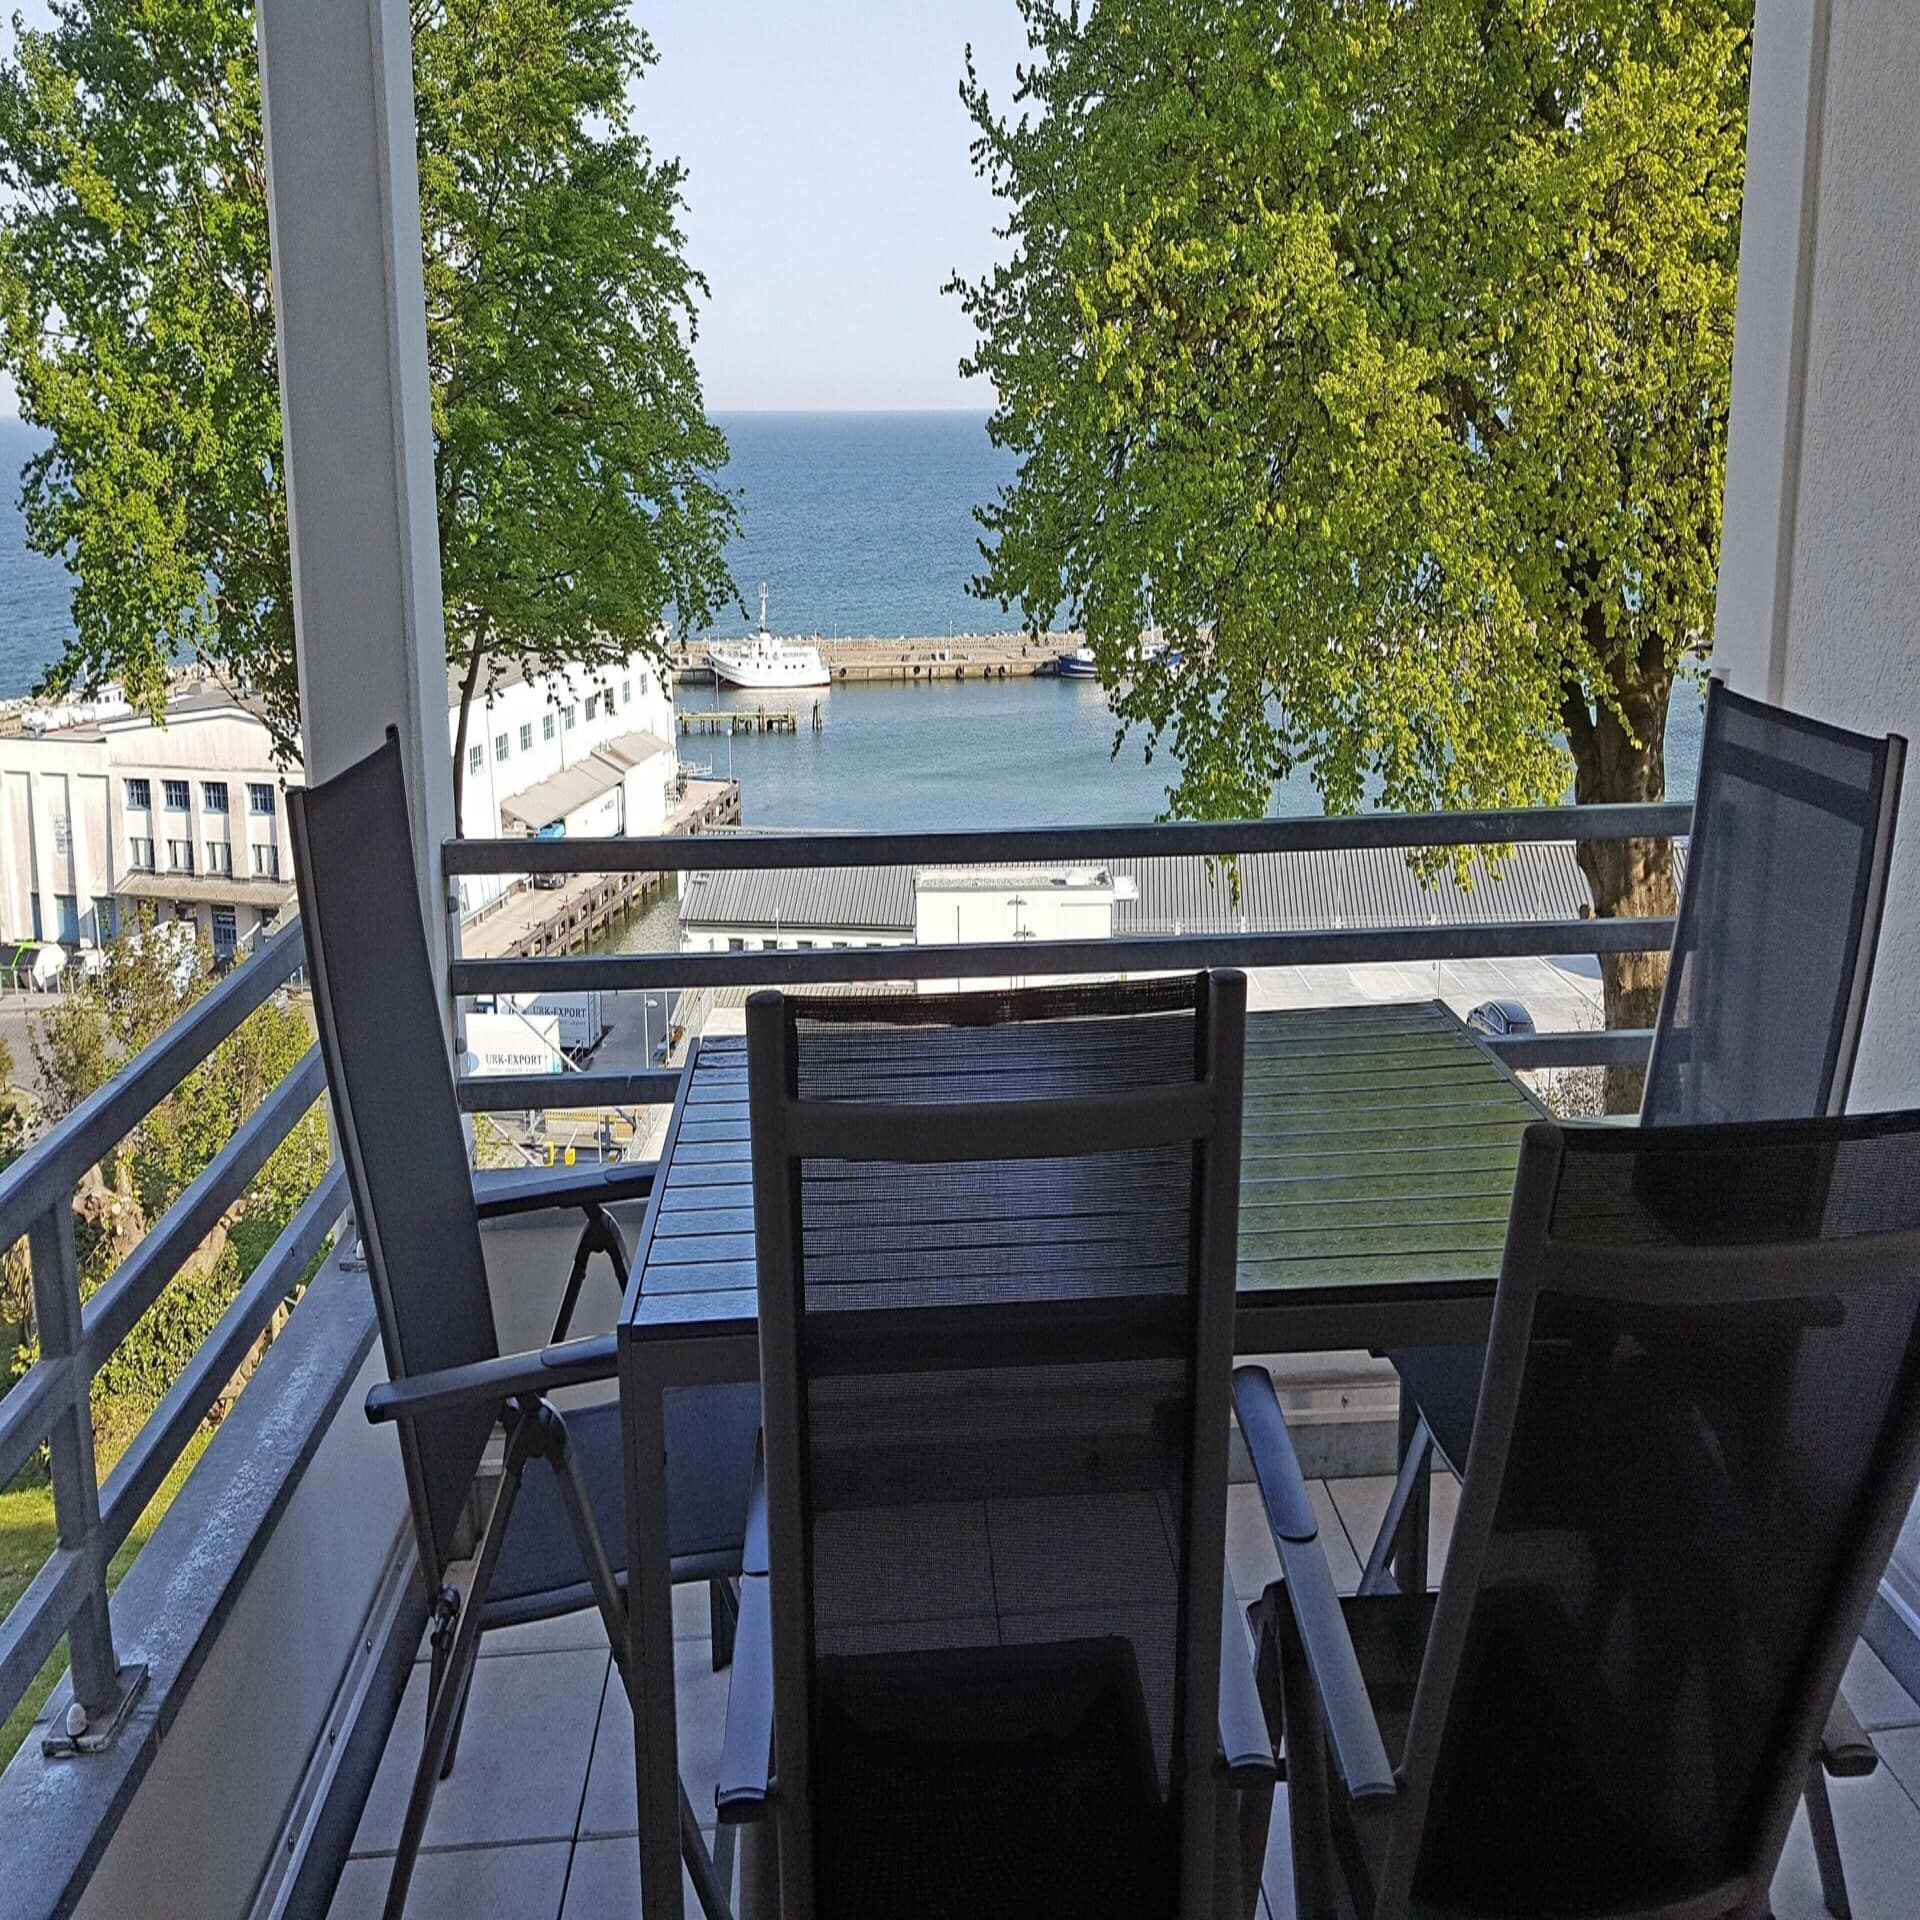 Balkon mit Tisch und Stühlen und Blick auf den Hafen von Sassnitz.